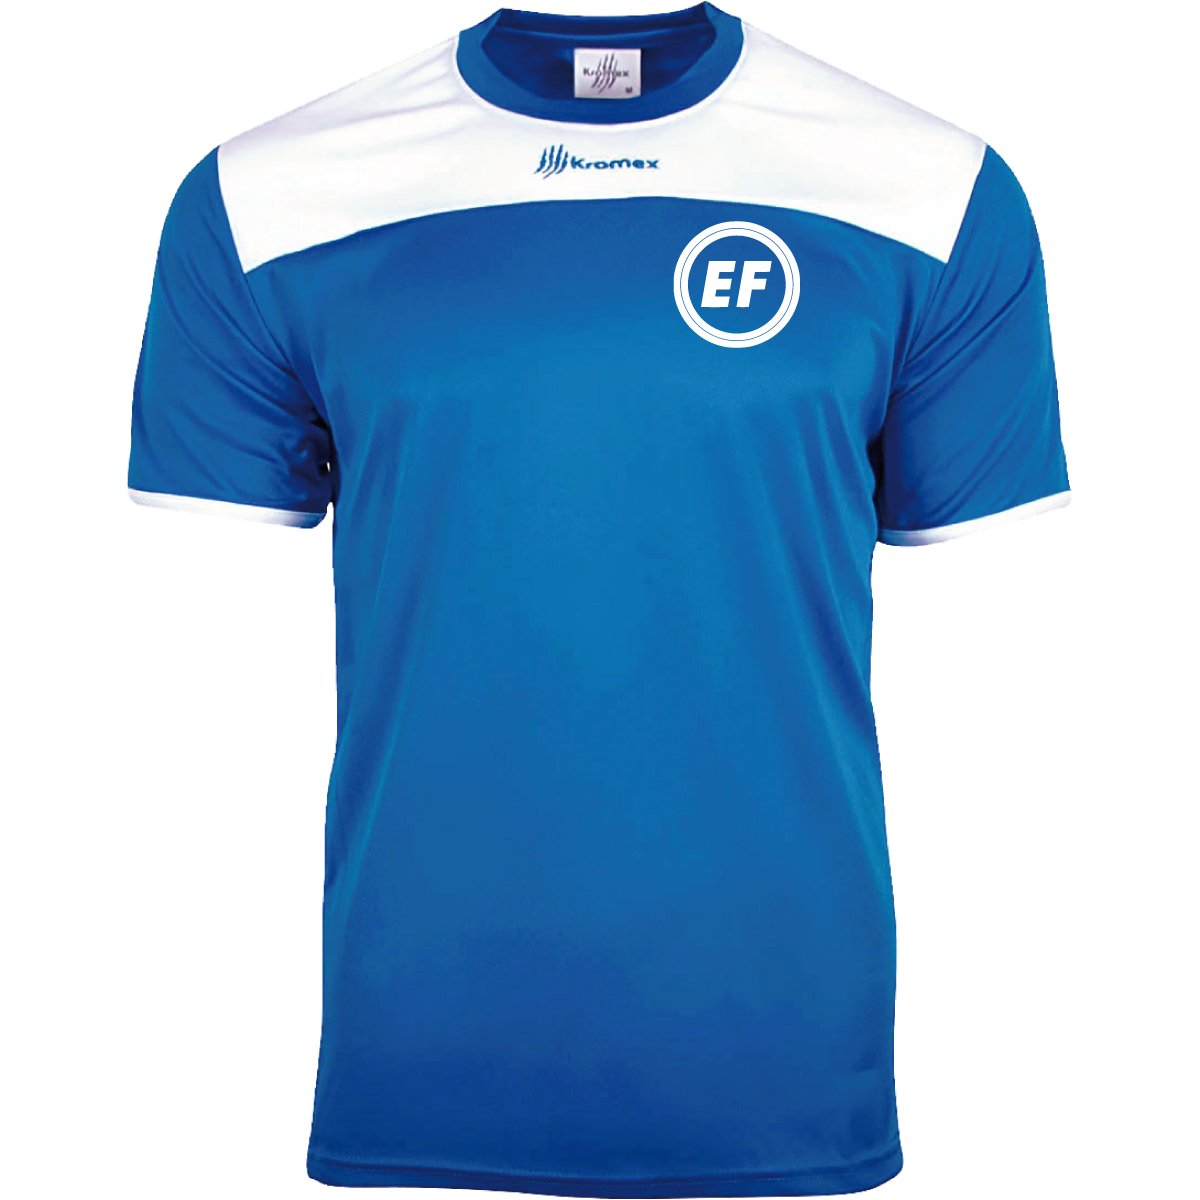 Jugador - Entrenamiento - Camiseta - Royal-Blanco - EliteFootball